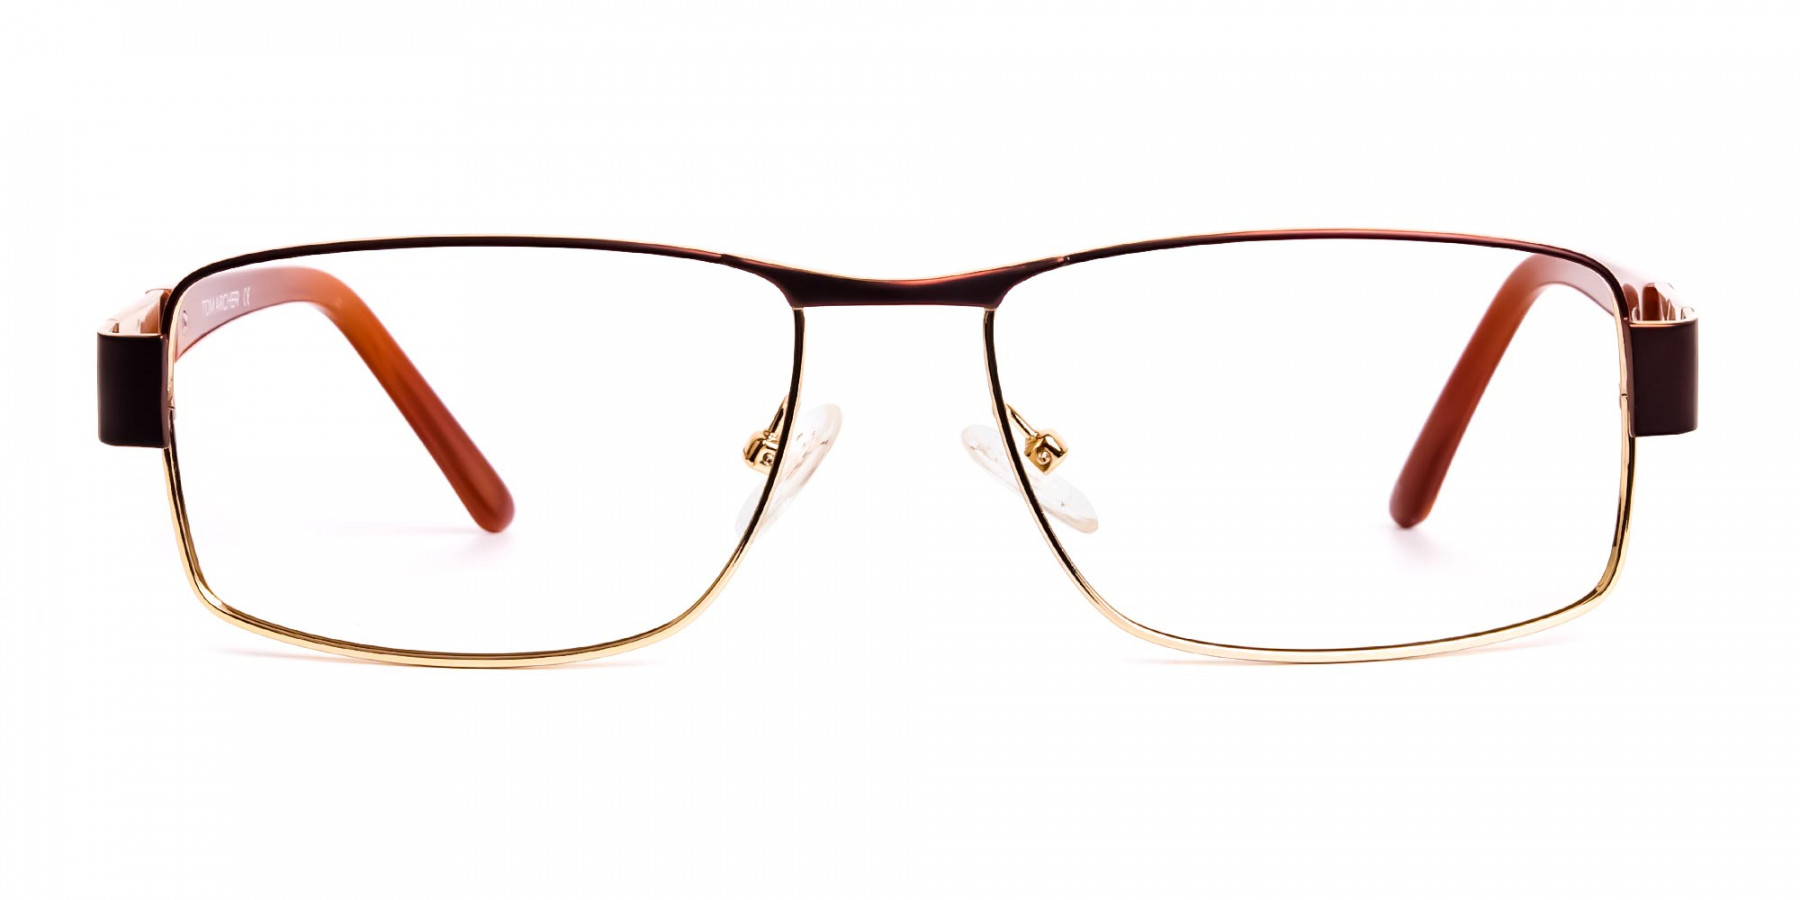 brown-and-gold-rectangular-full-rim-rectangular-glasses-frames-1